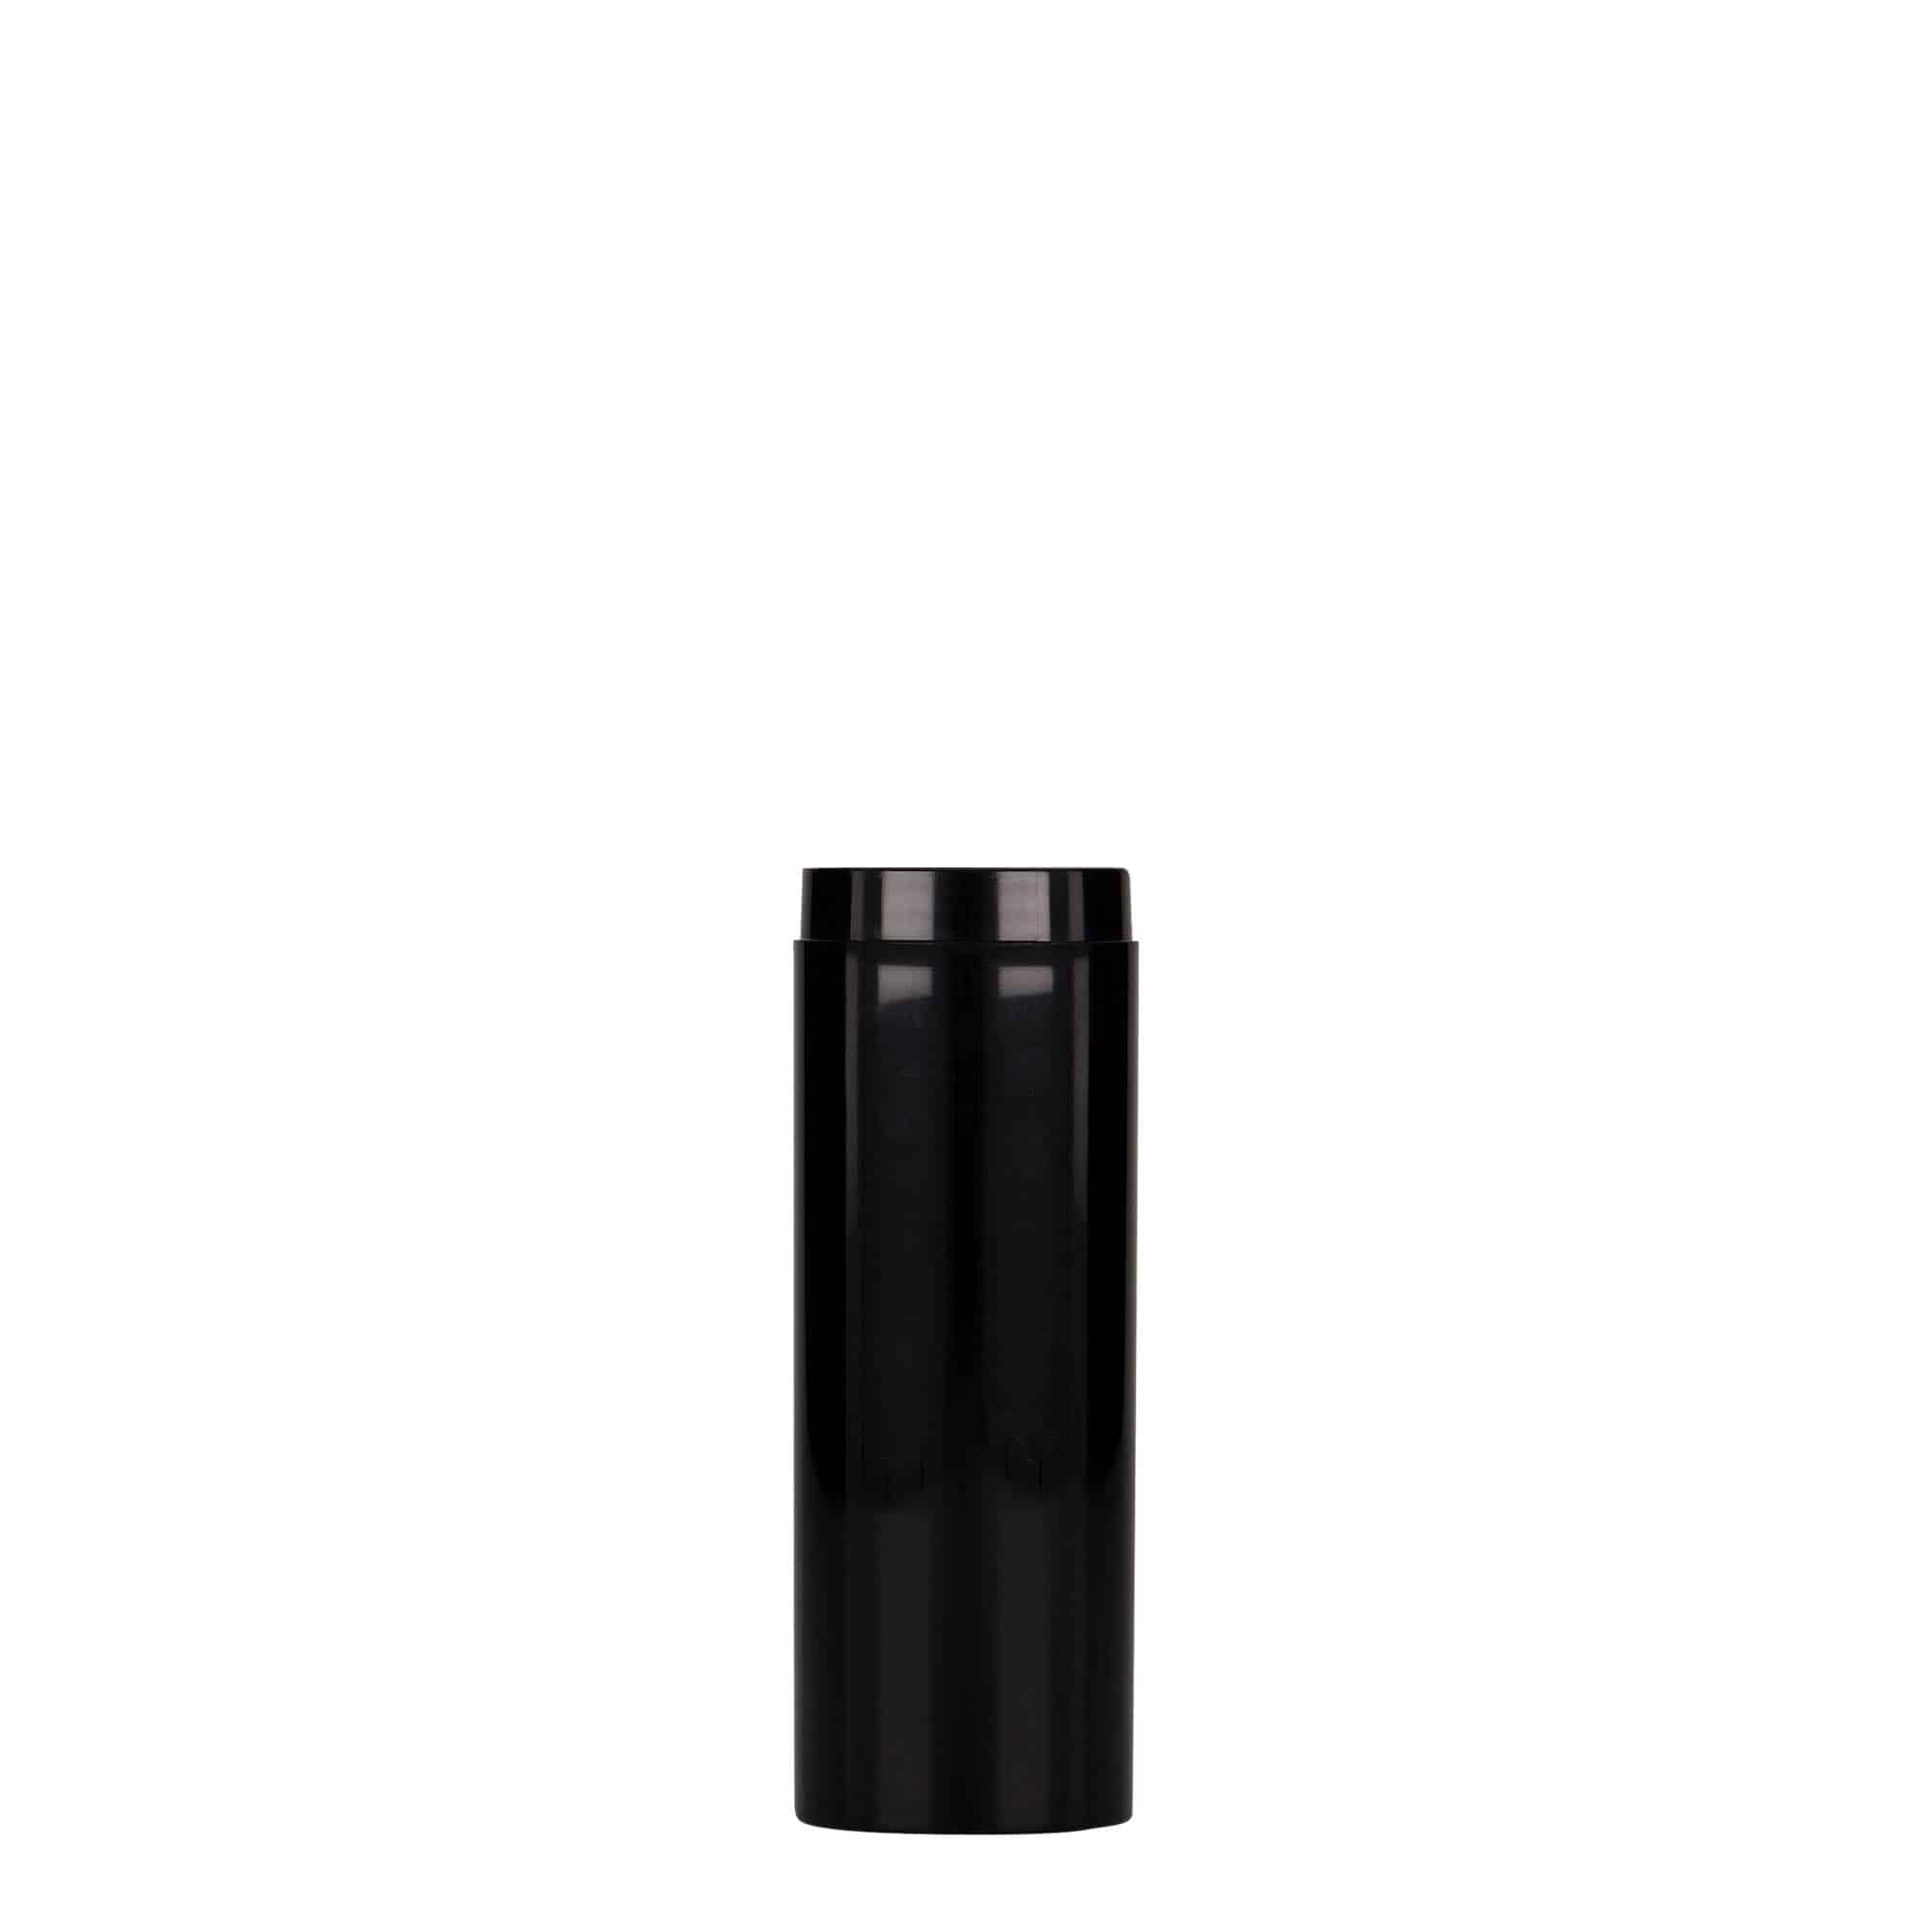 30 ml dozownik airless 'Micro', tworzywo sztuczne PP, kolor czarny